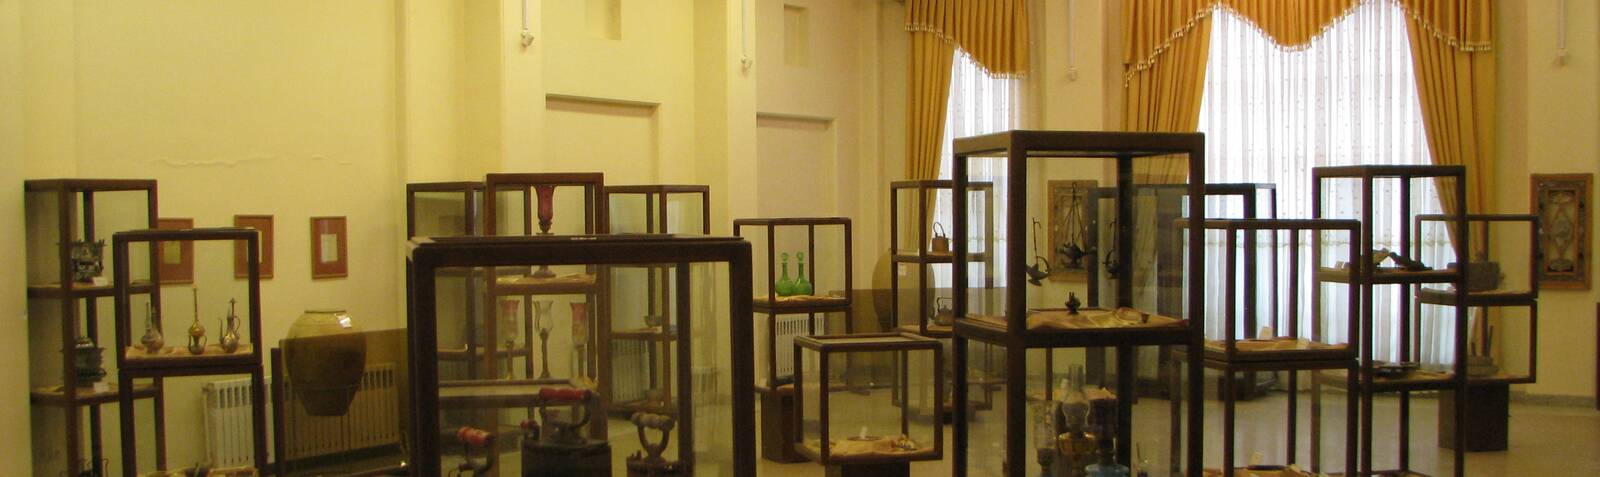 موزه فرهنگ وتاریخ اسدآباد( مردم شناسی)  